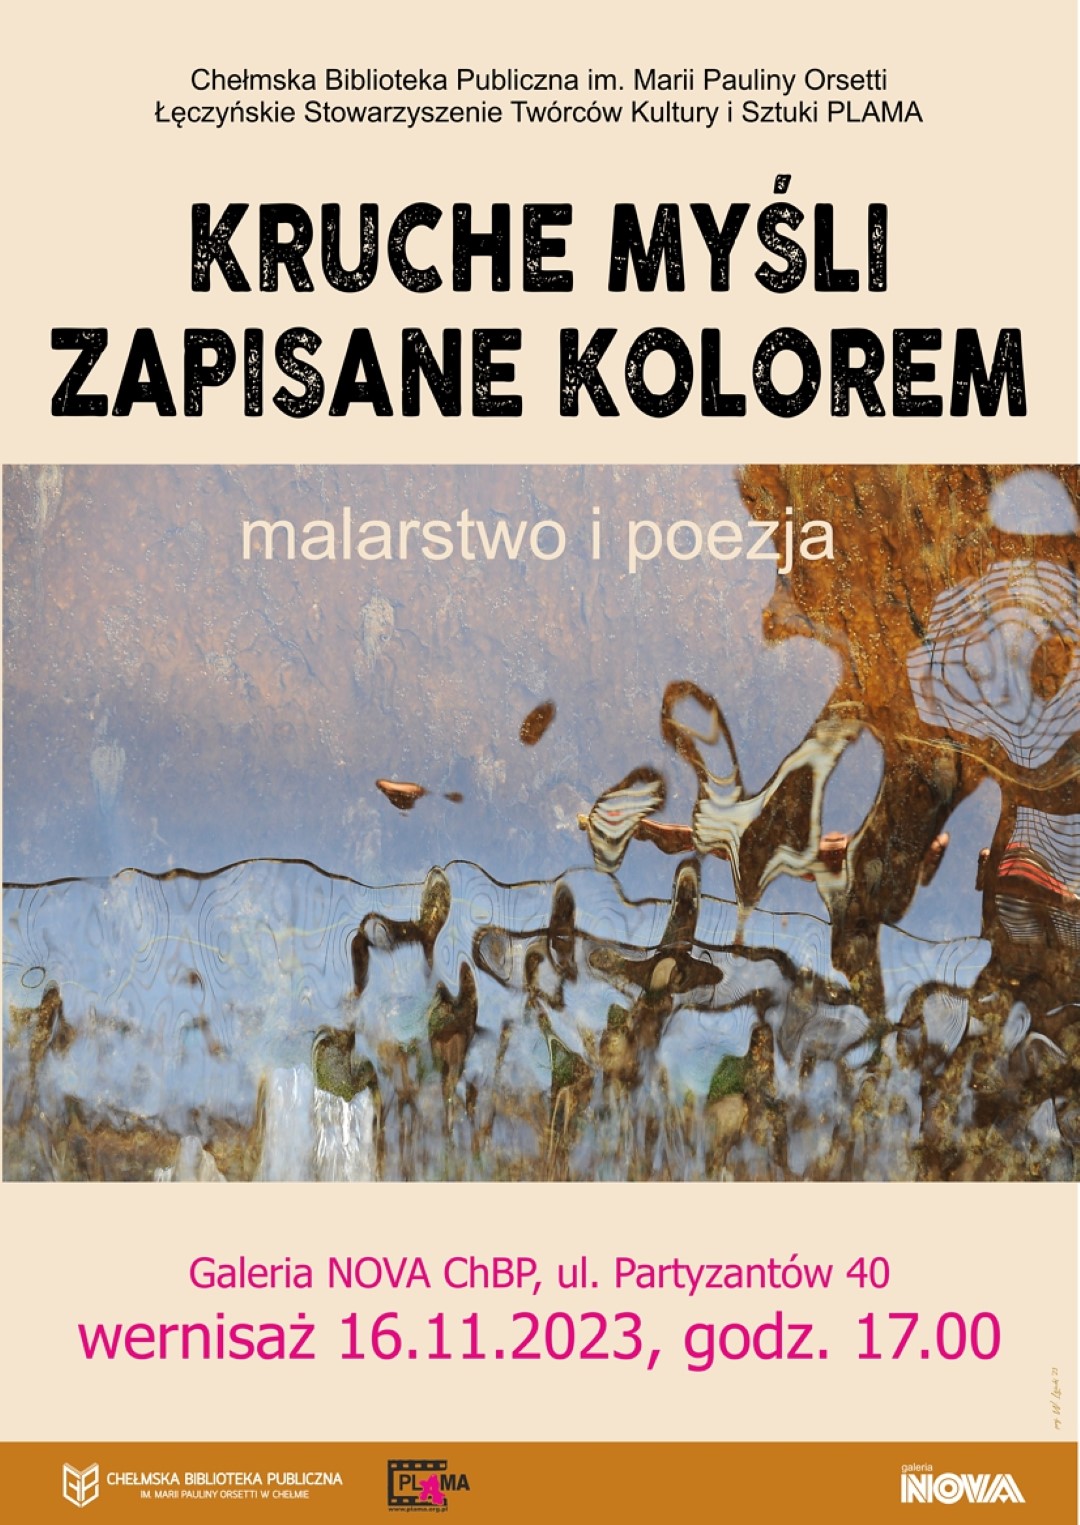 Plakat zapraszający na wernisaż wystawy Kruche myśli zapiane kolorem